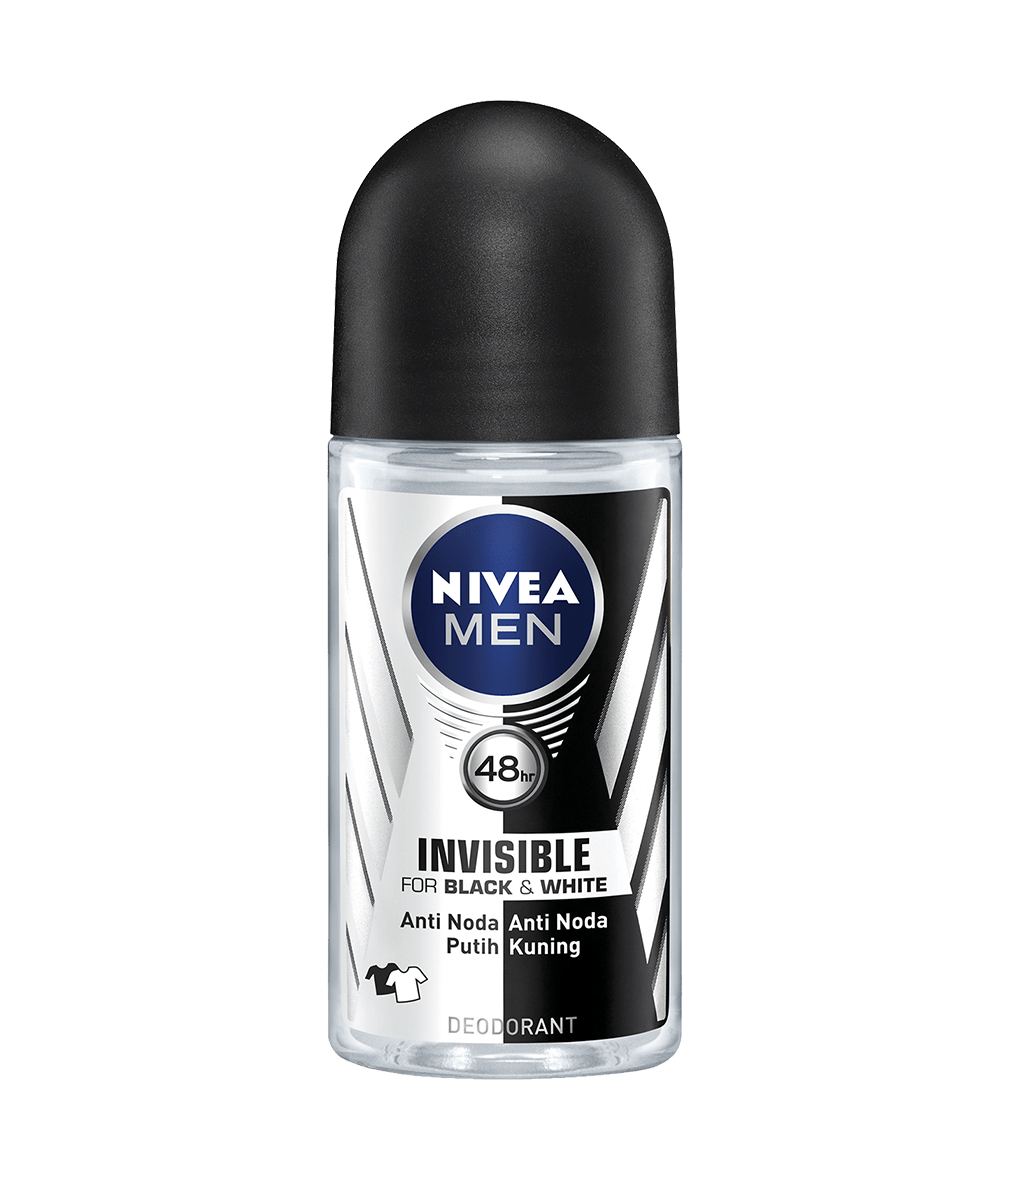 NIVEA MEN Invisible For Black & White Deodorant Roll-on